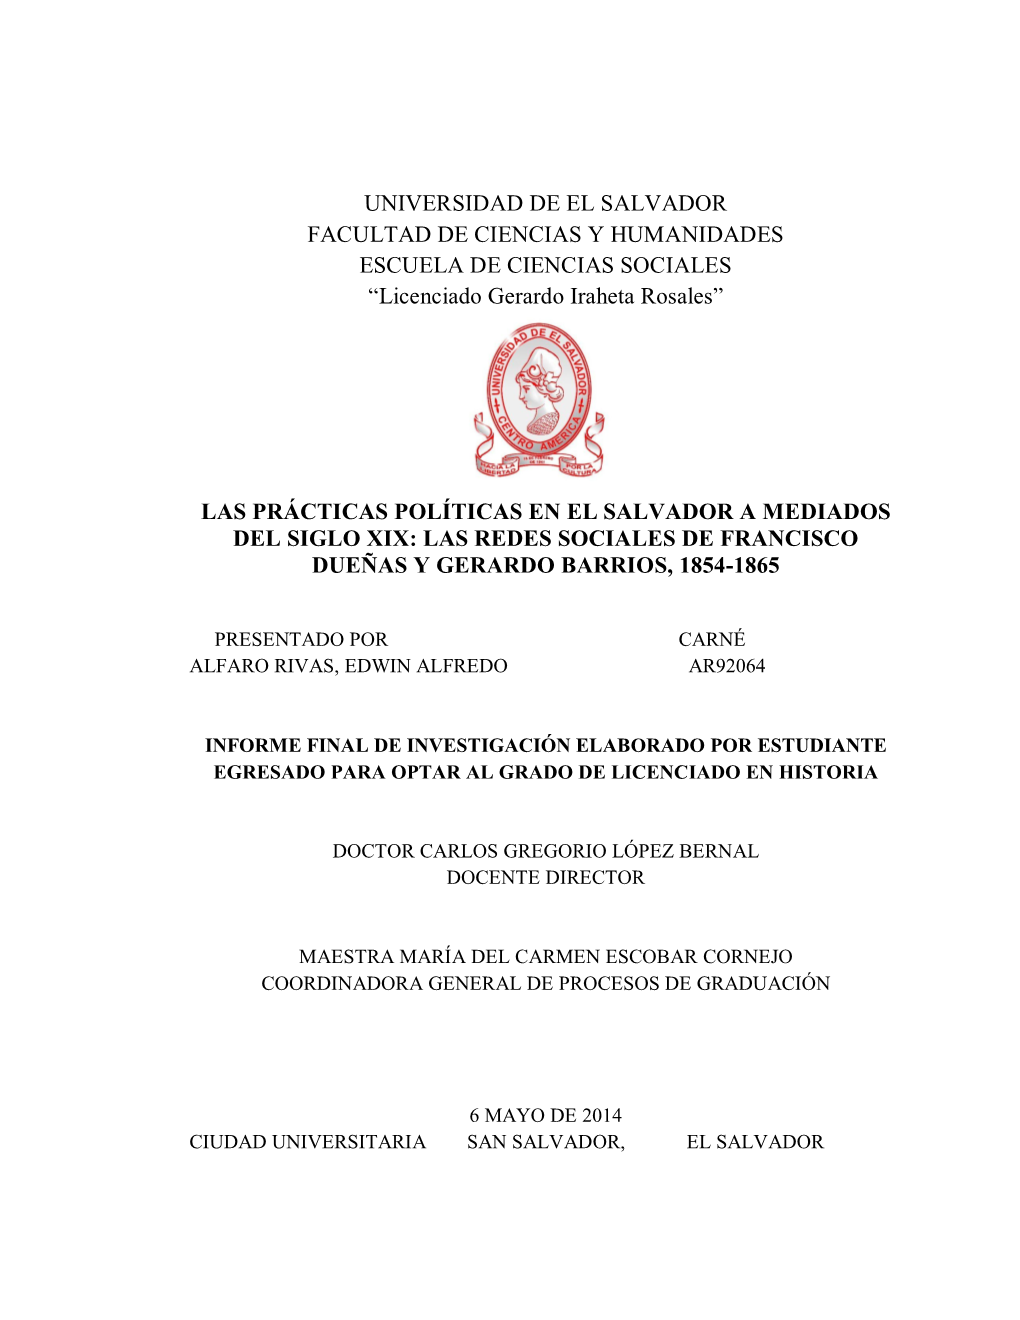 UNIVERSIDAD DE EL SALVADOR FACULTAD DE CIENCIAS Y HUMANIDADES ESCUELA DE CIENCIAS SOCIALES “Licenciado Gerardo Iraheta Rosales”